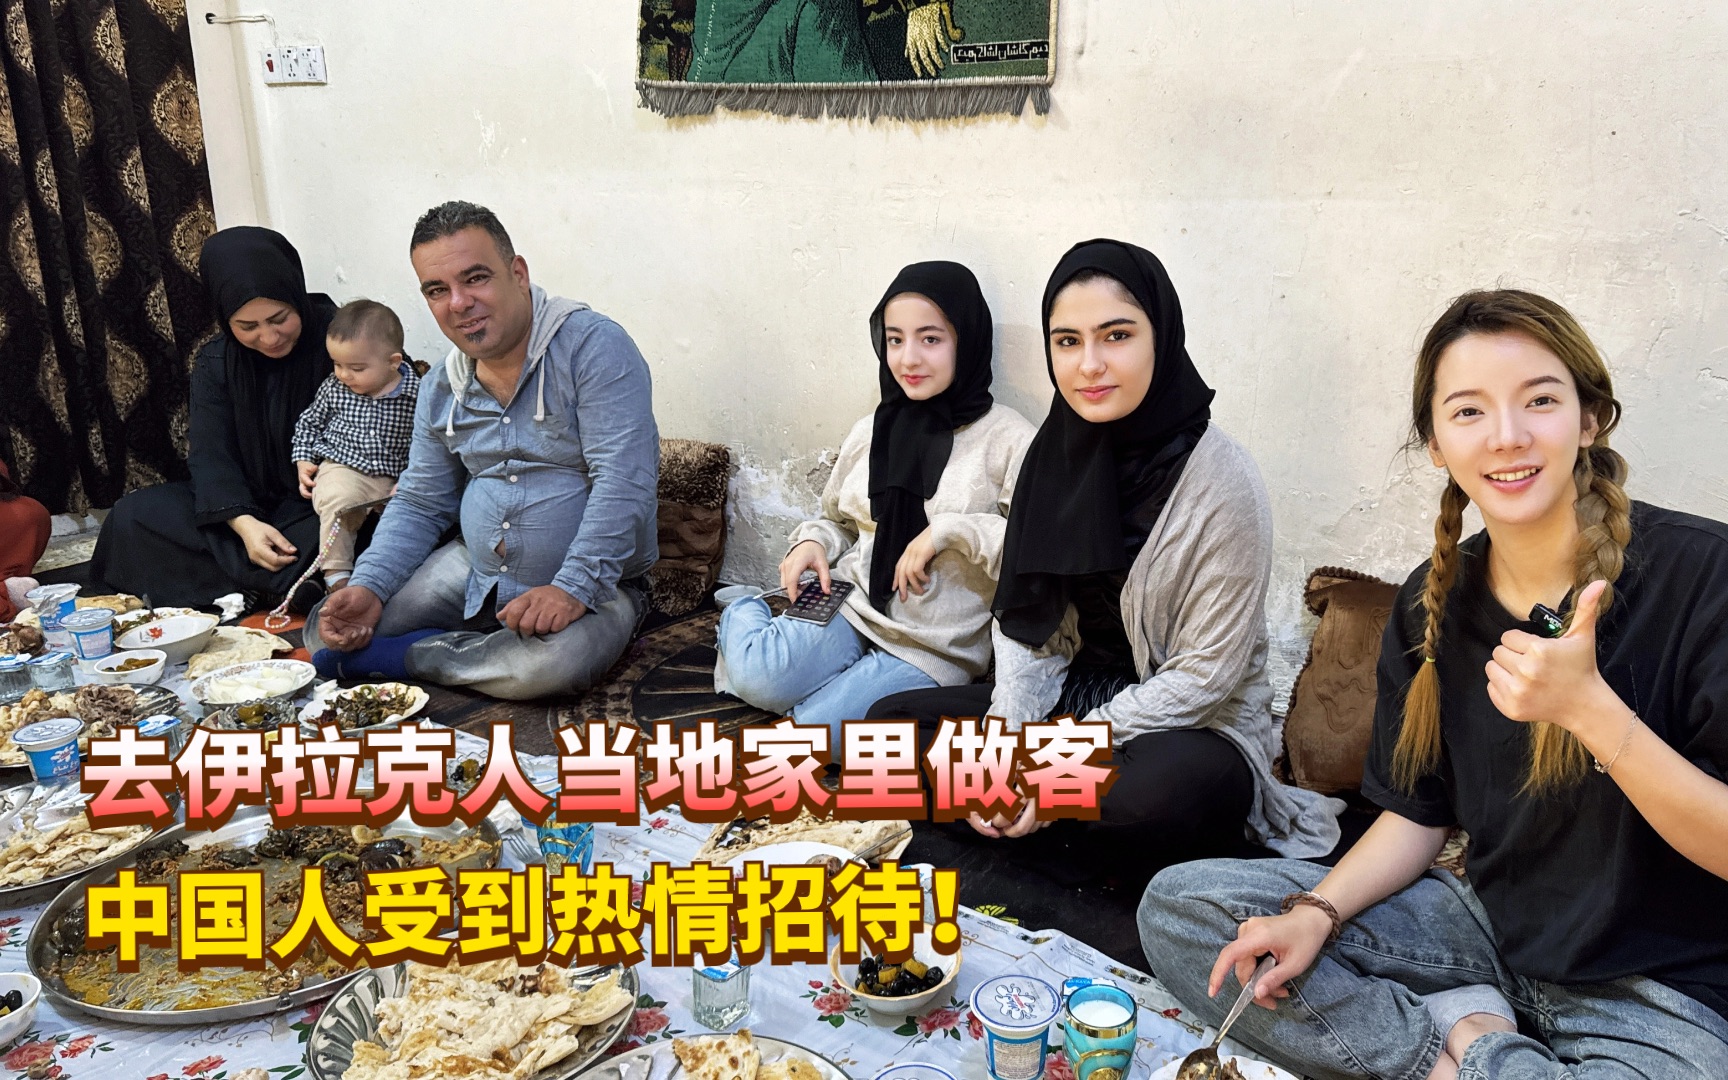 中国人在伊拉克受到最高规格接待,去当地人家里做客,女主人罕见露面!